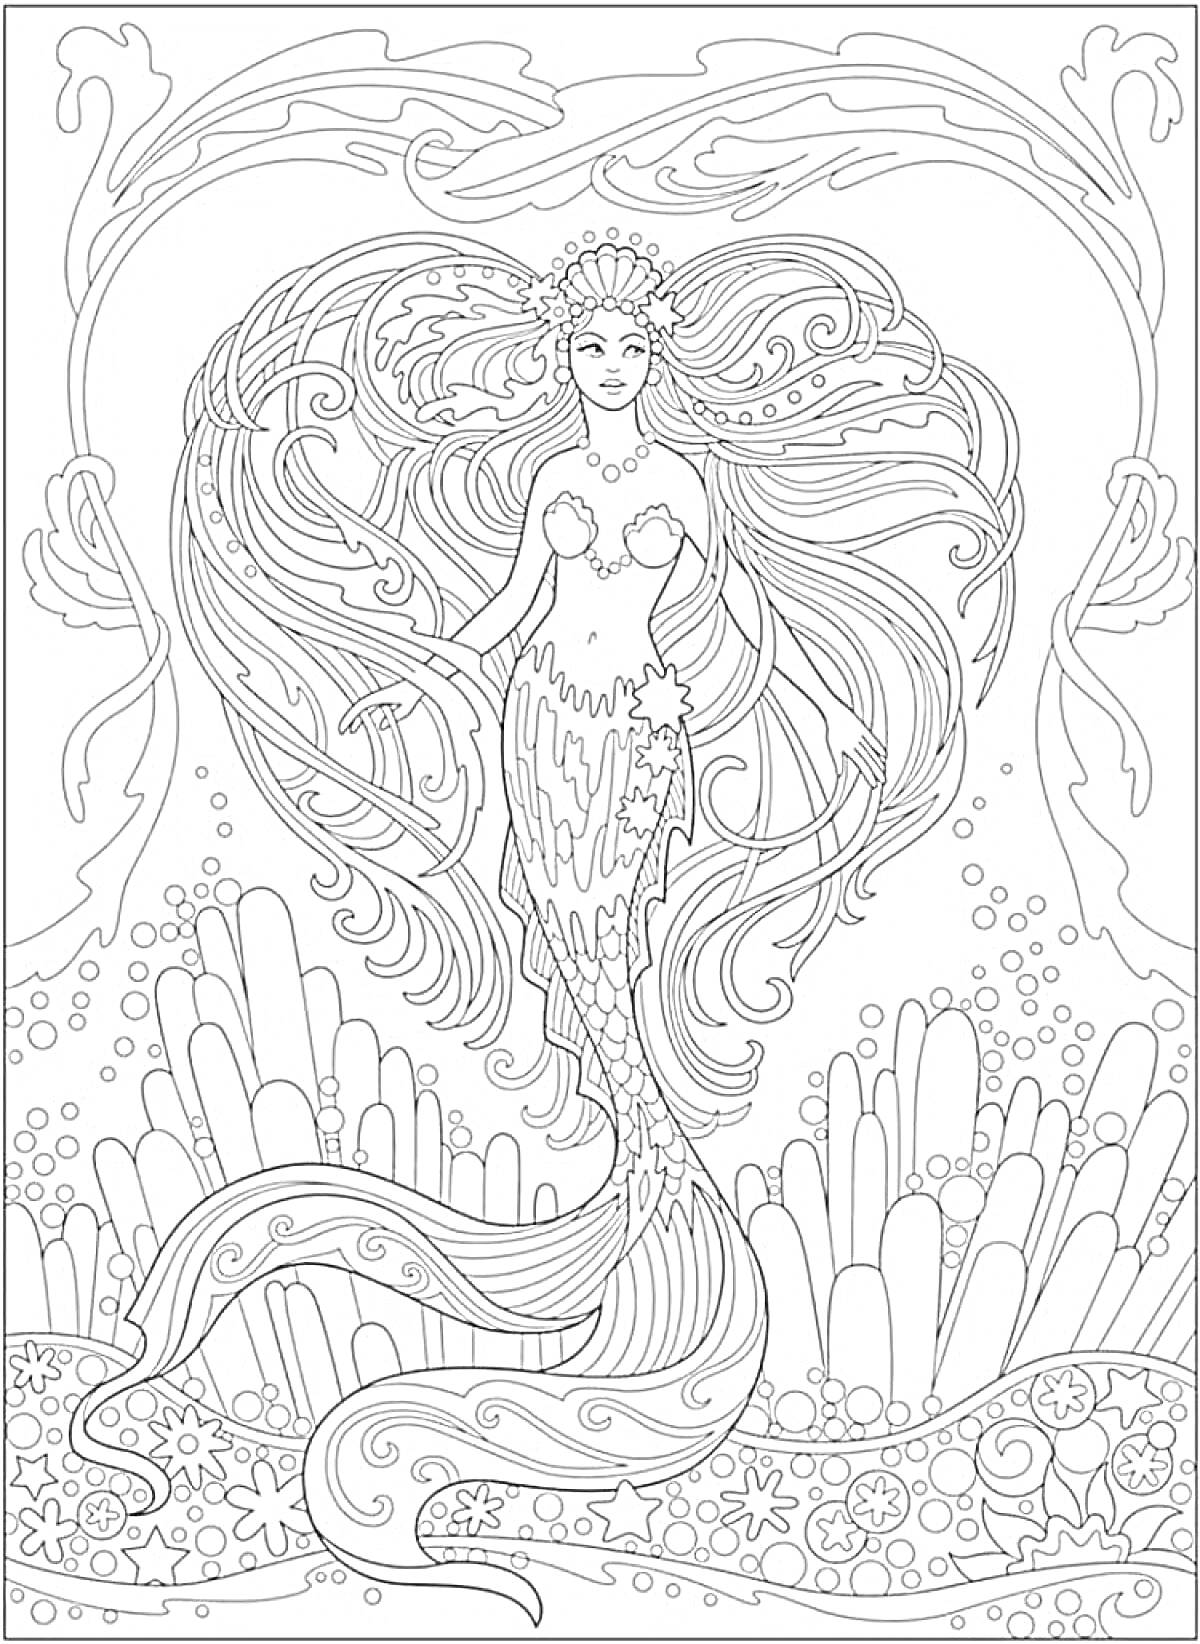 РаскраскаРусалка с длинными волосами и короной на фоне подводного царства с кораллами и морскими звездами